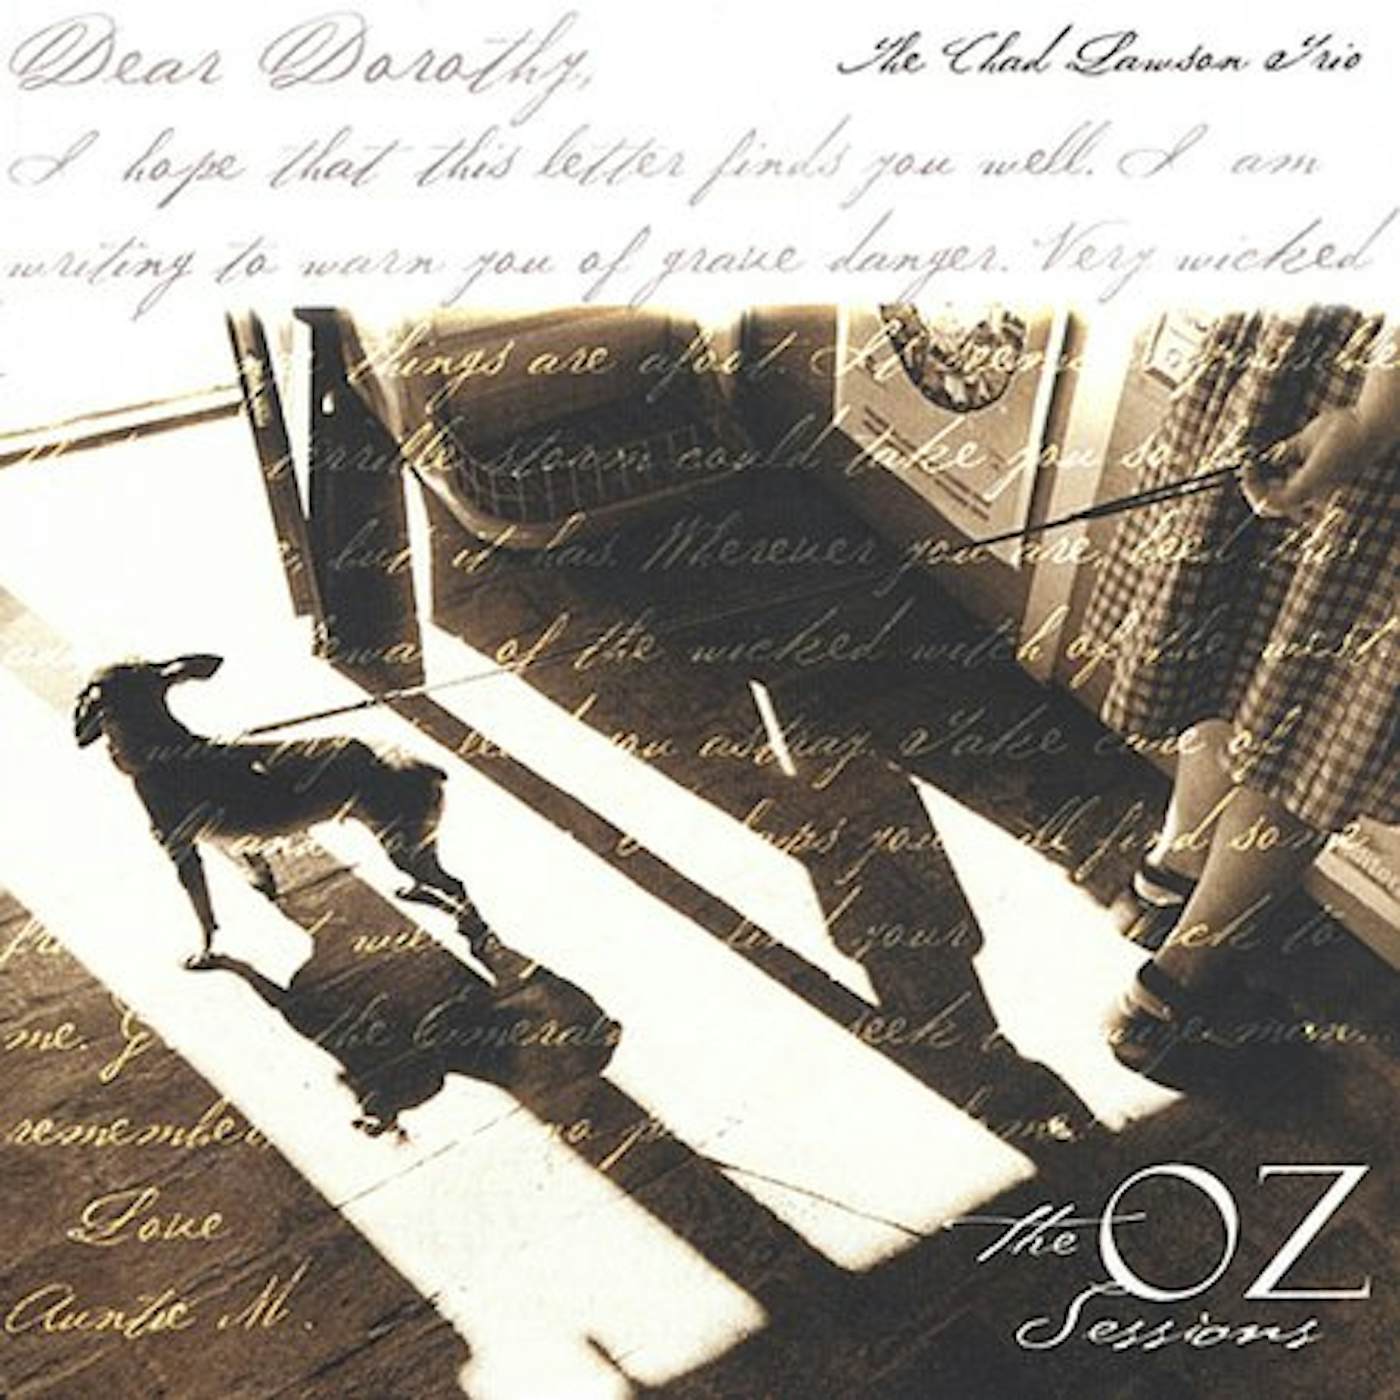 Chad Lawson DEAR DOROTHY: THE OZ SESSIONS CD